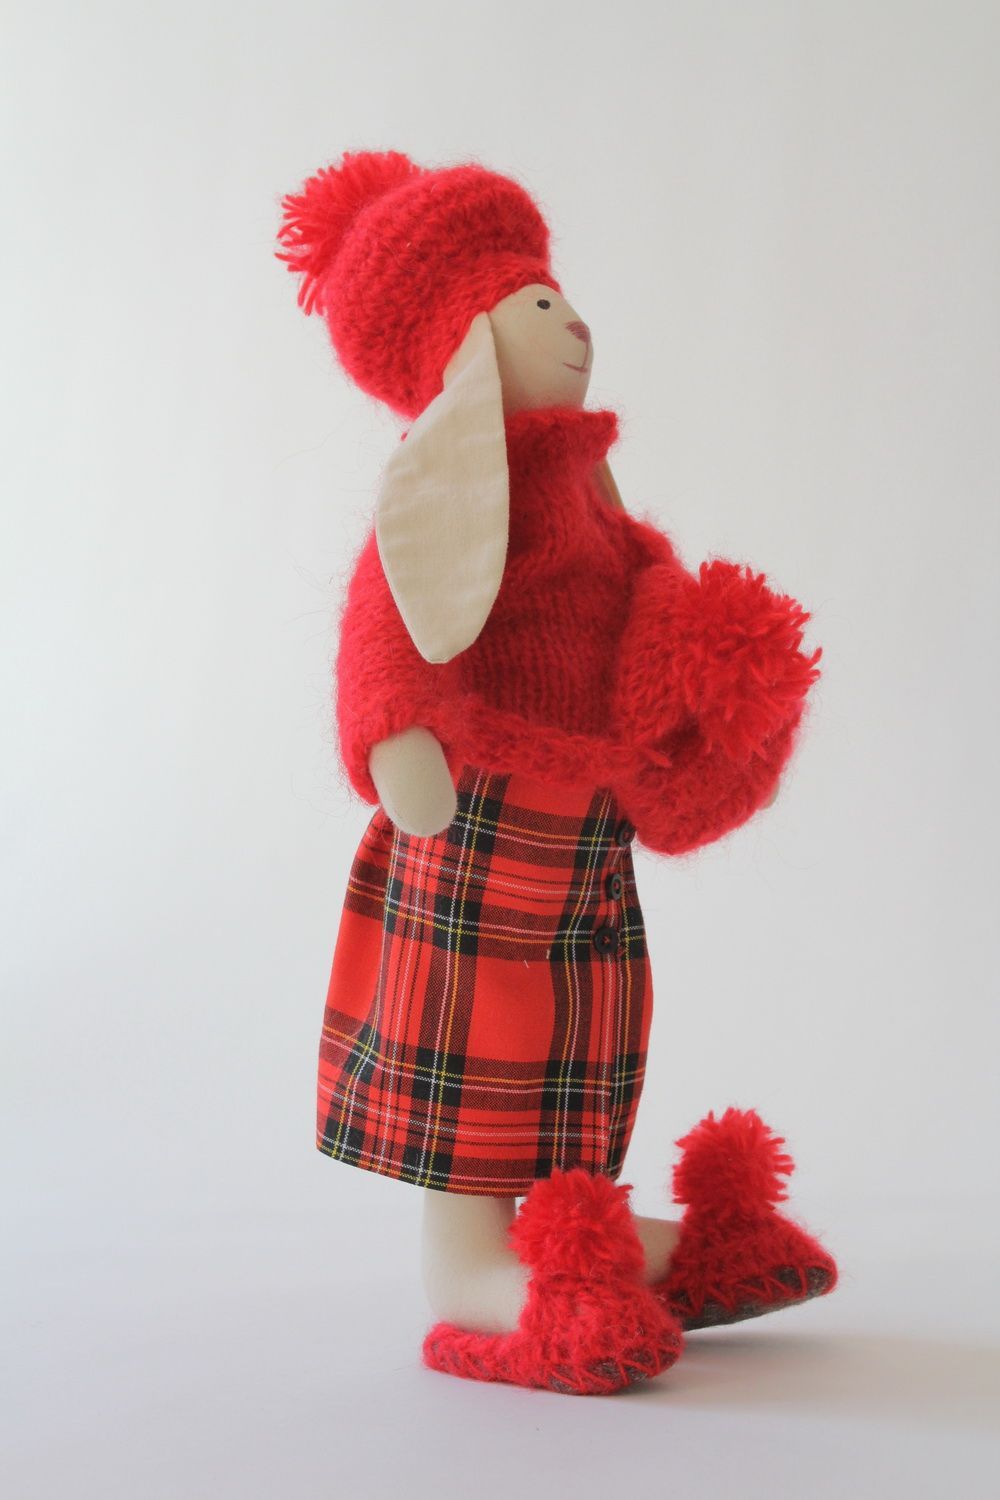 Textil Hase in schottischer Kleidung foto 1